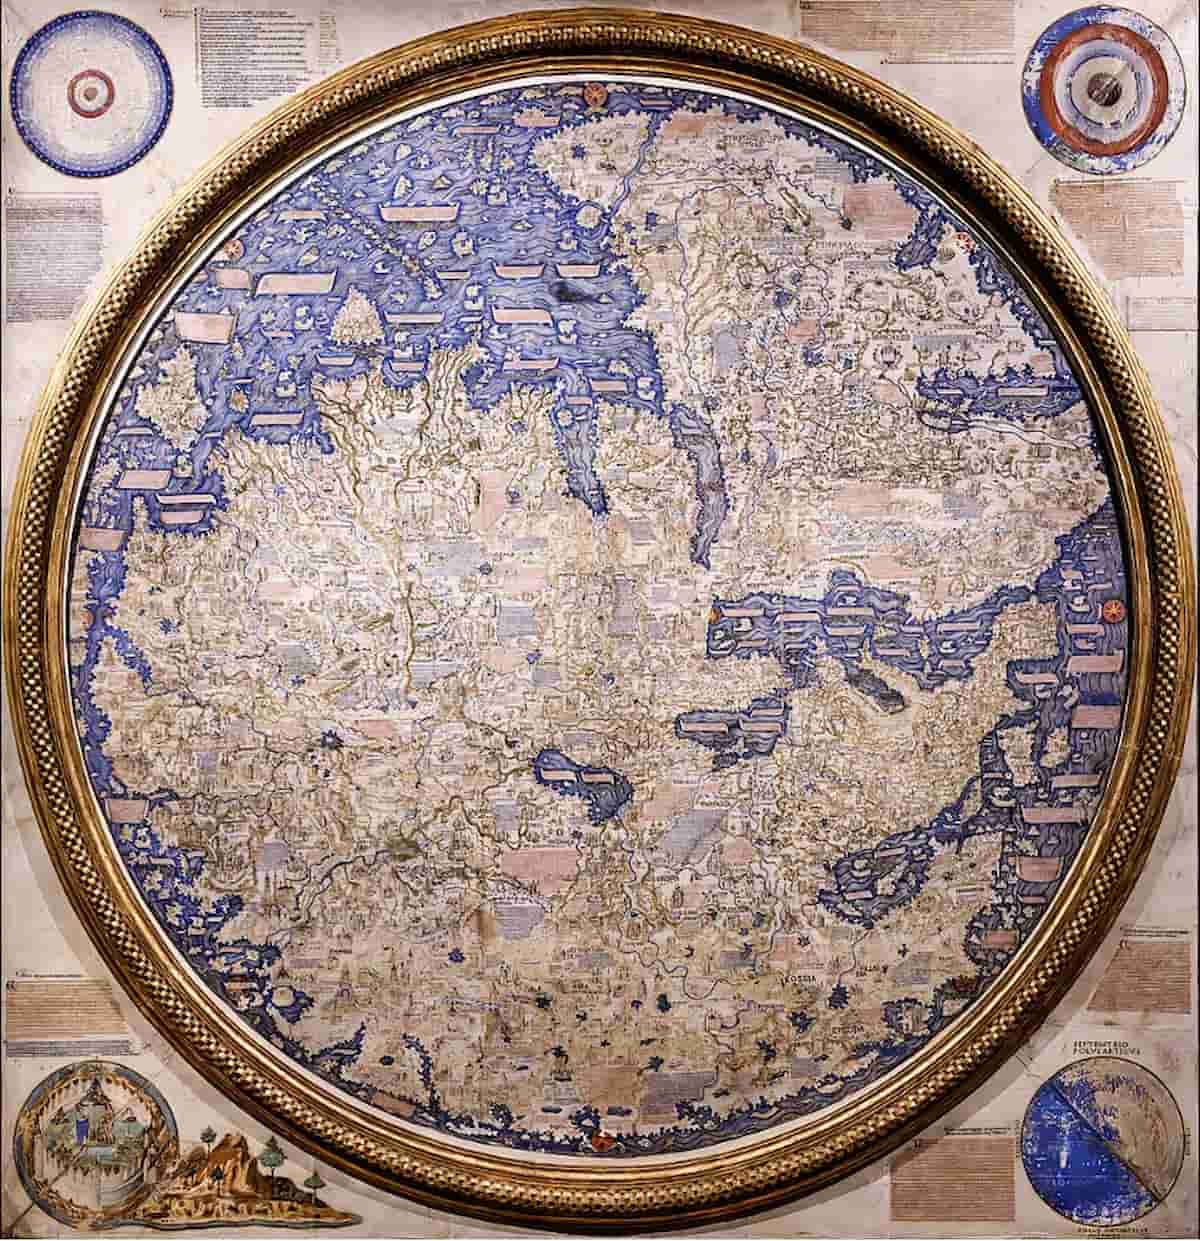 Weitere Einzelheiten Mappa mundi von Fra Mauro Wikipdeia